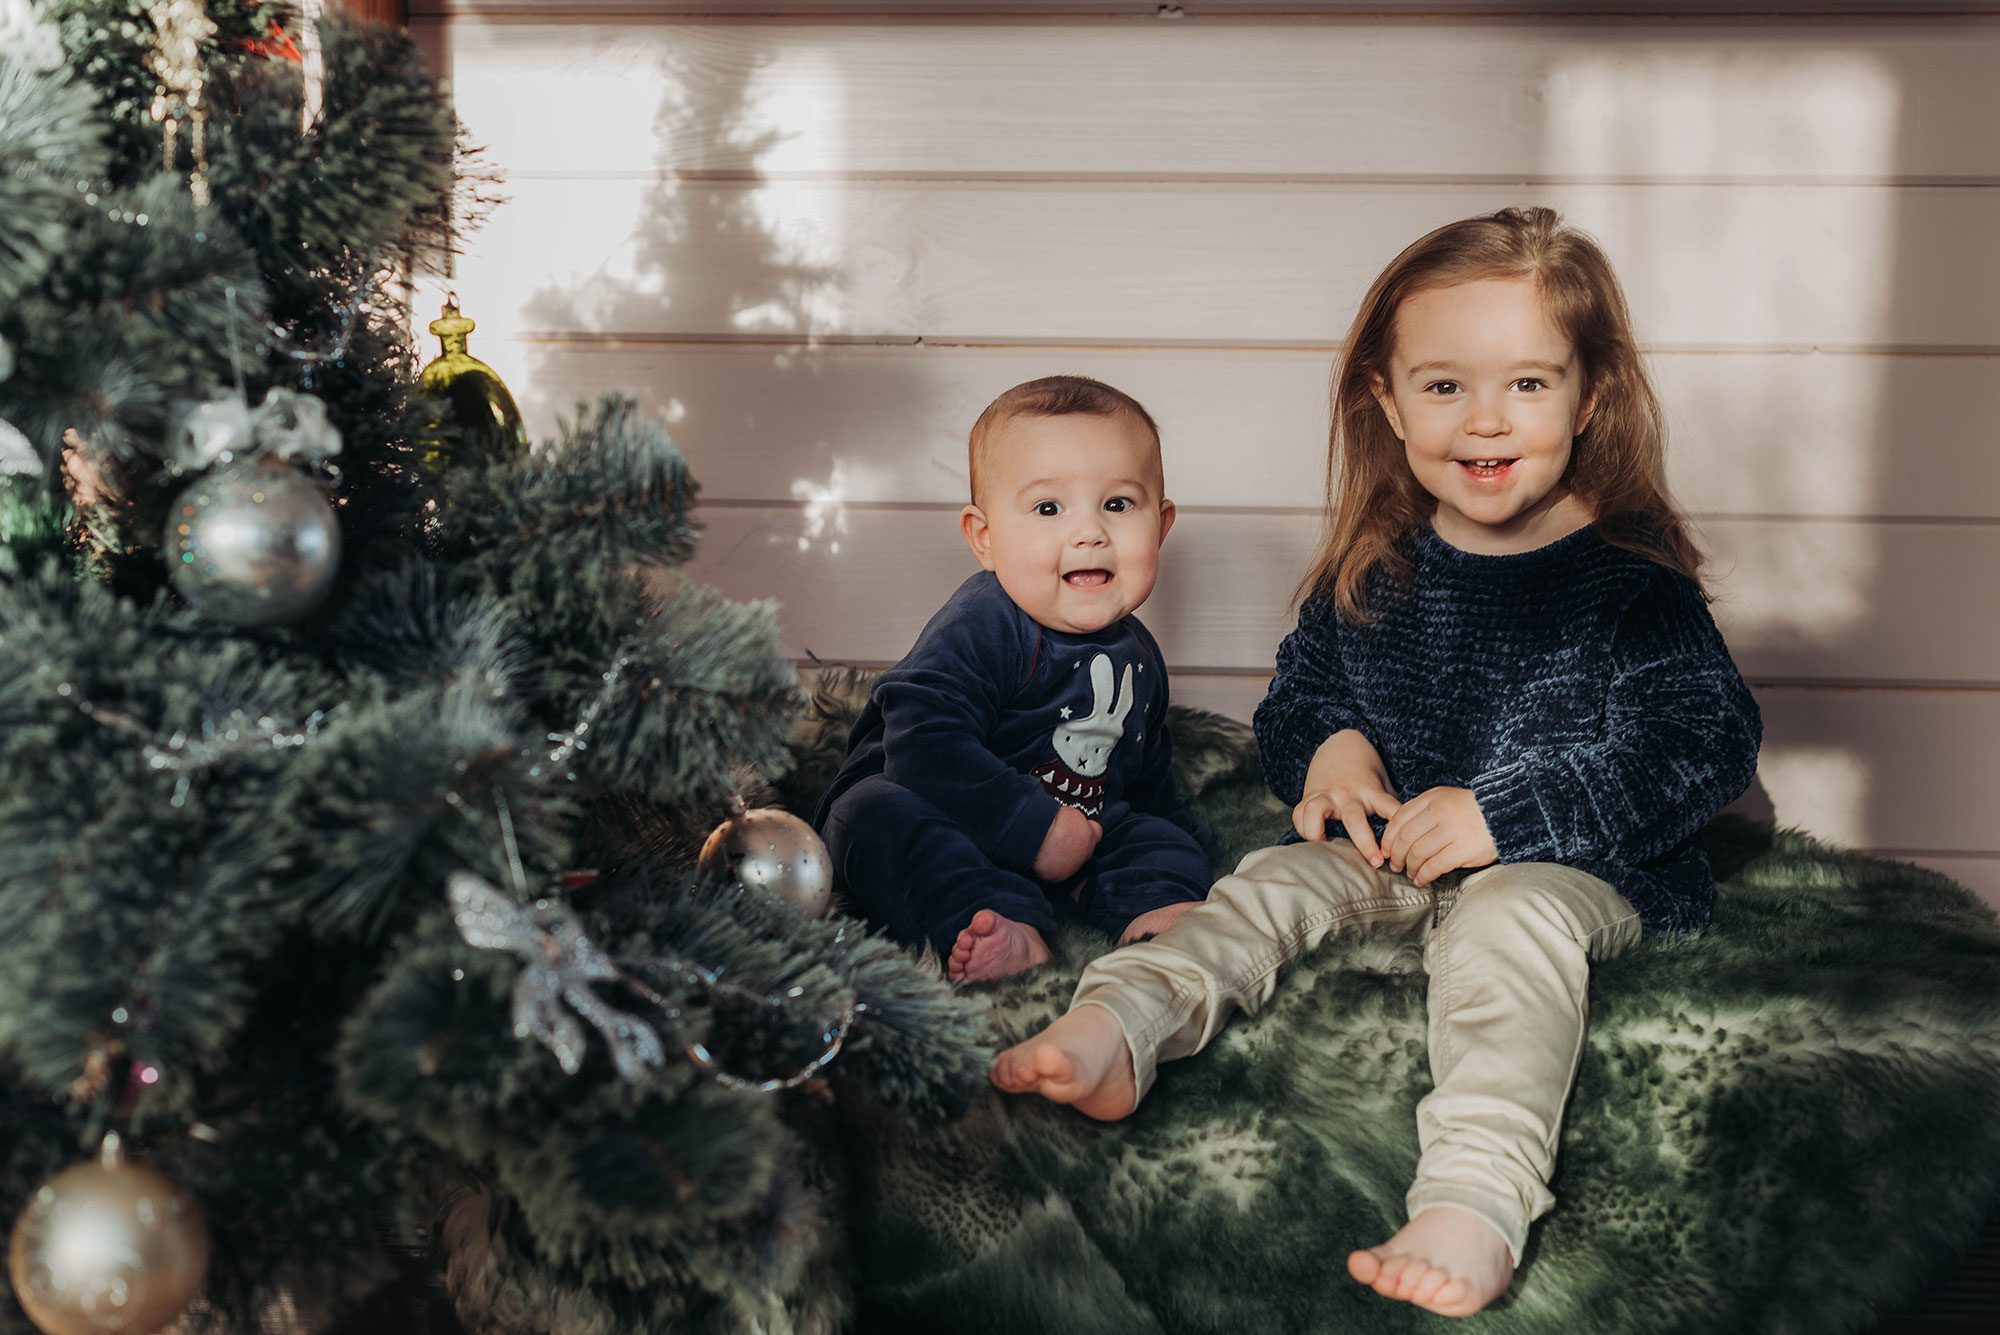 Kinderfotografie. Fotoshooting für Weihnachten